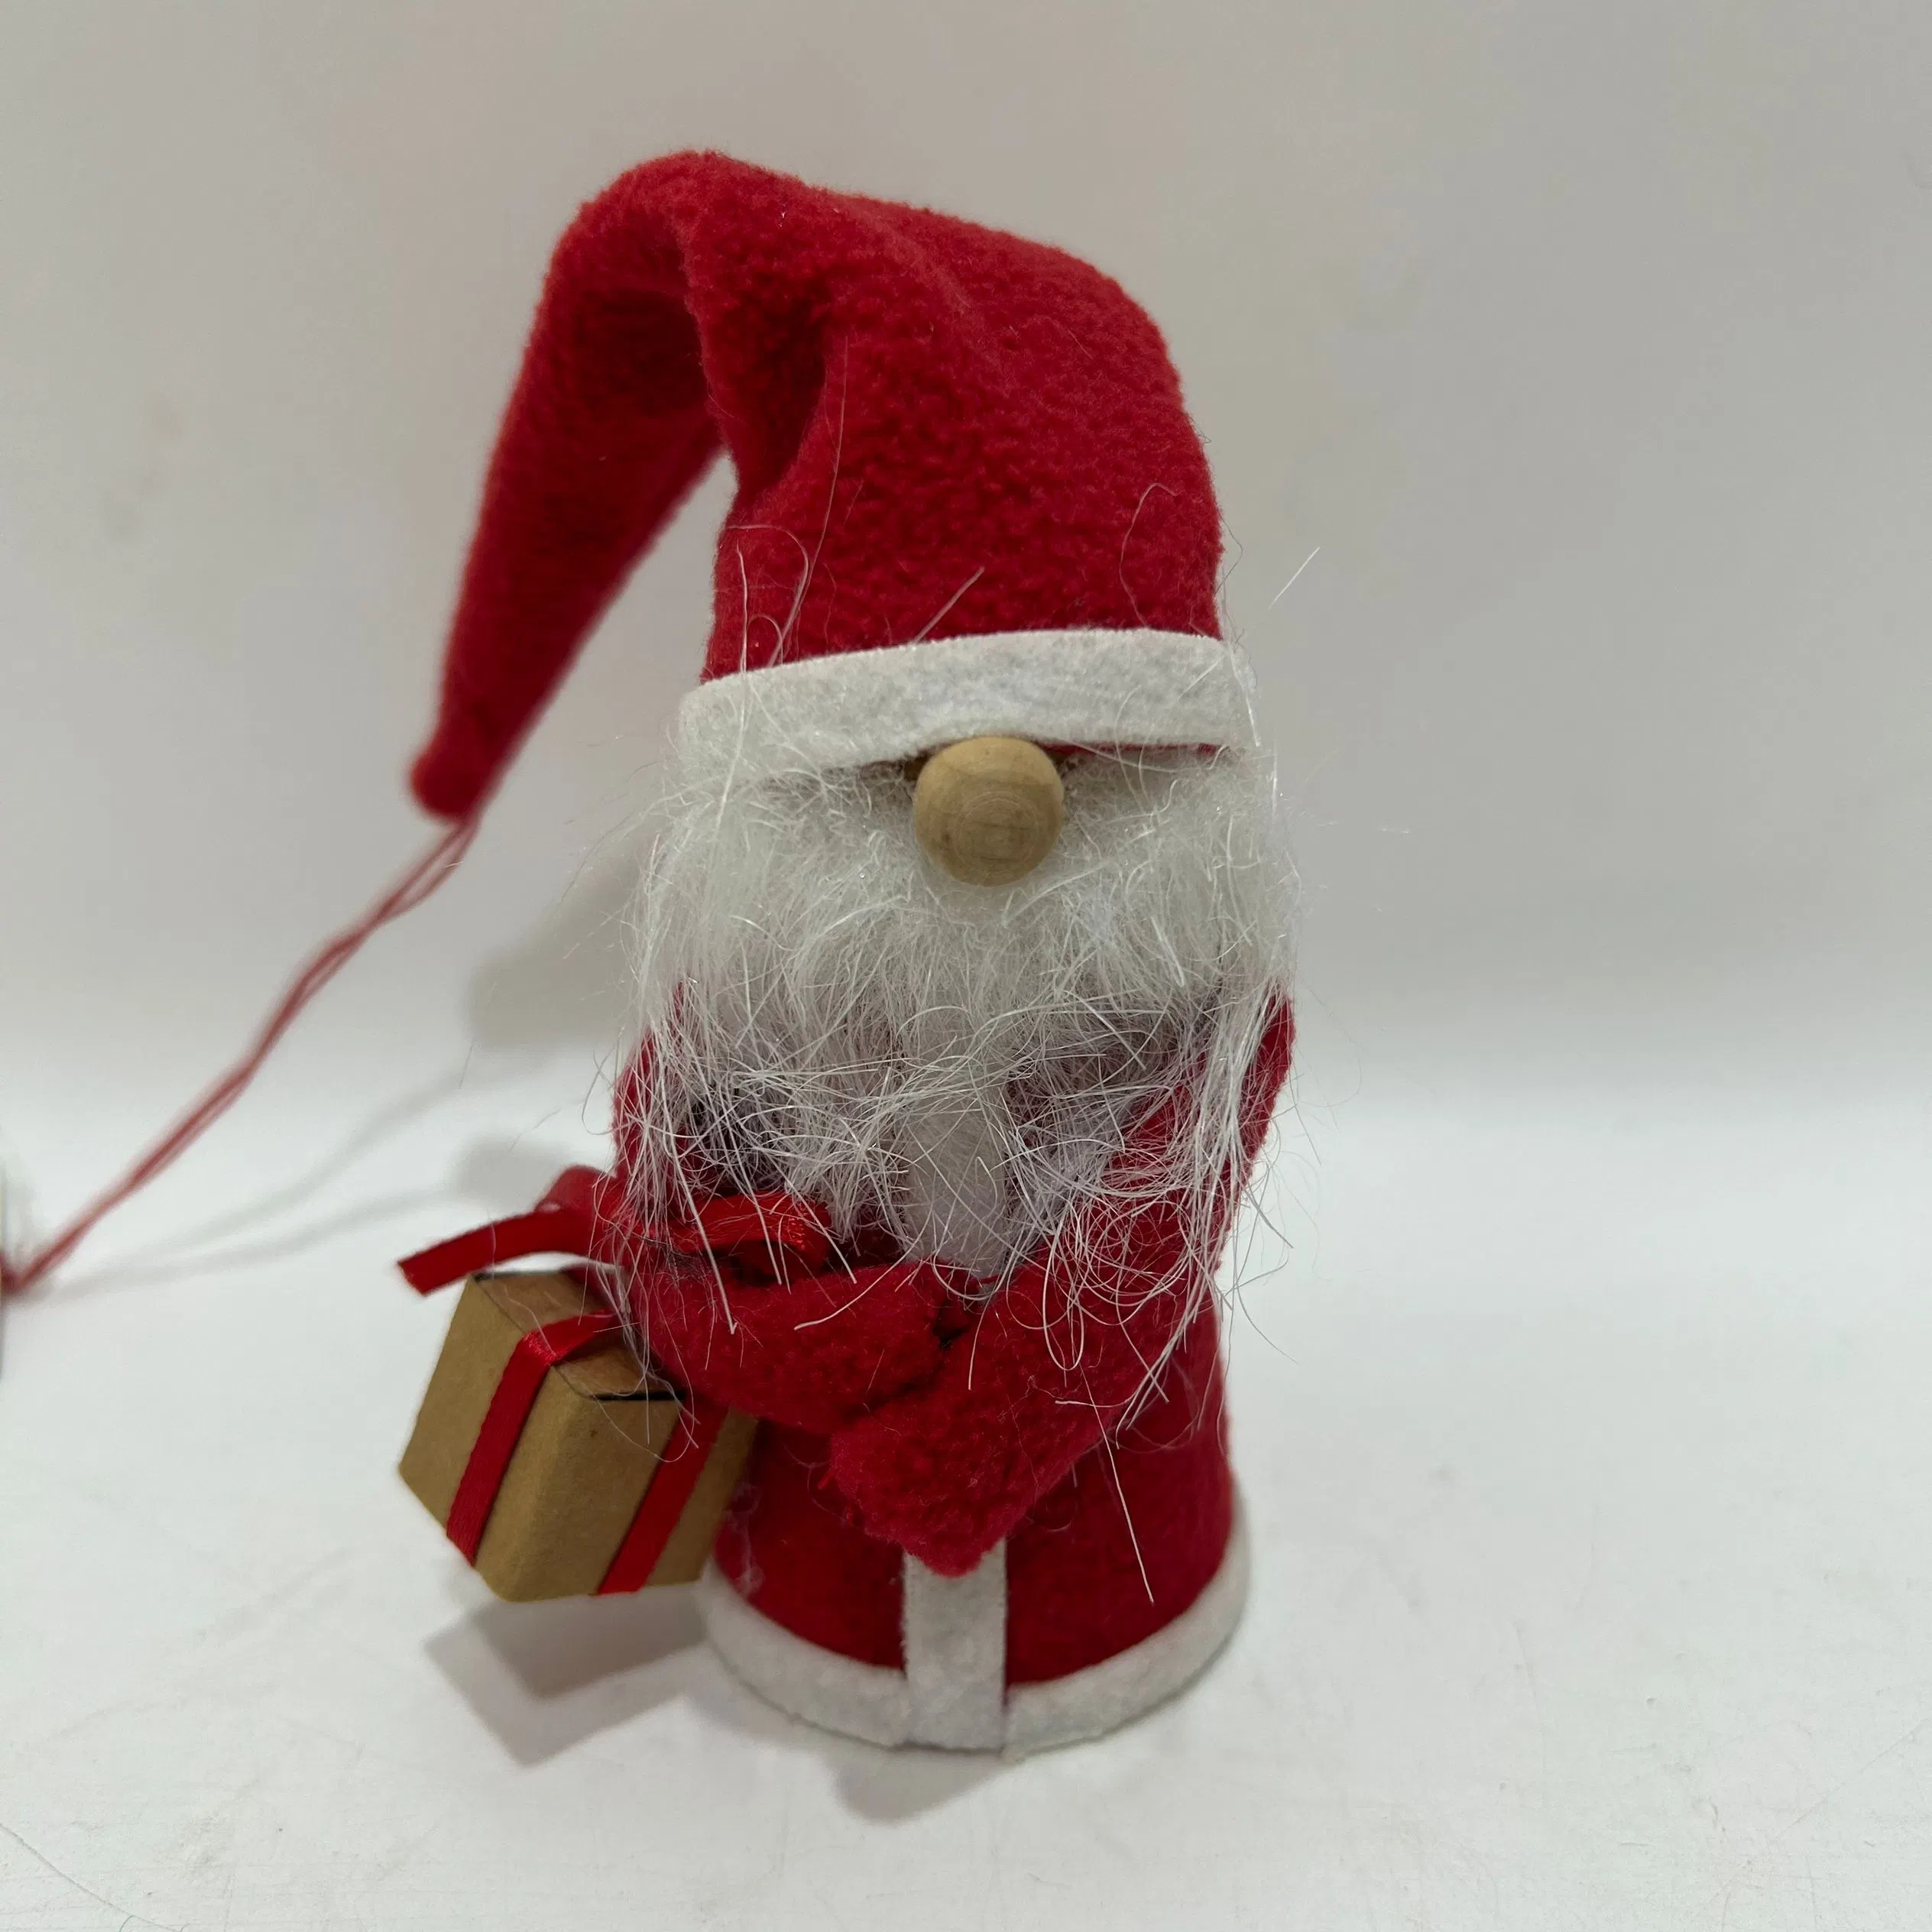 Tomte de Gnome Handmaden, décorations de Noël Merci de donner des cadeaux de jour pour la décoration de Noël